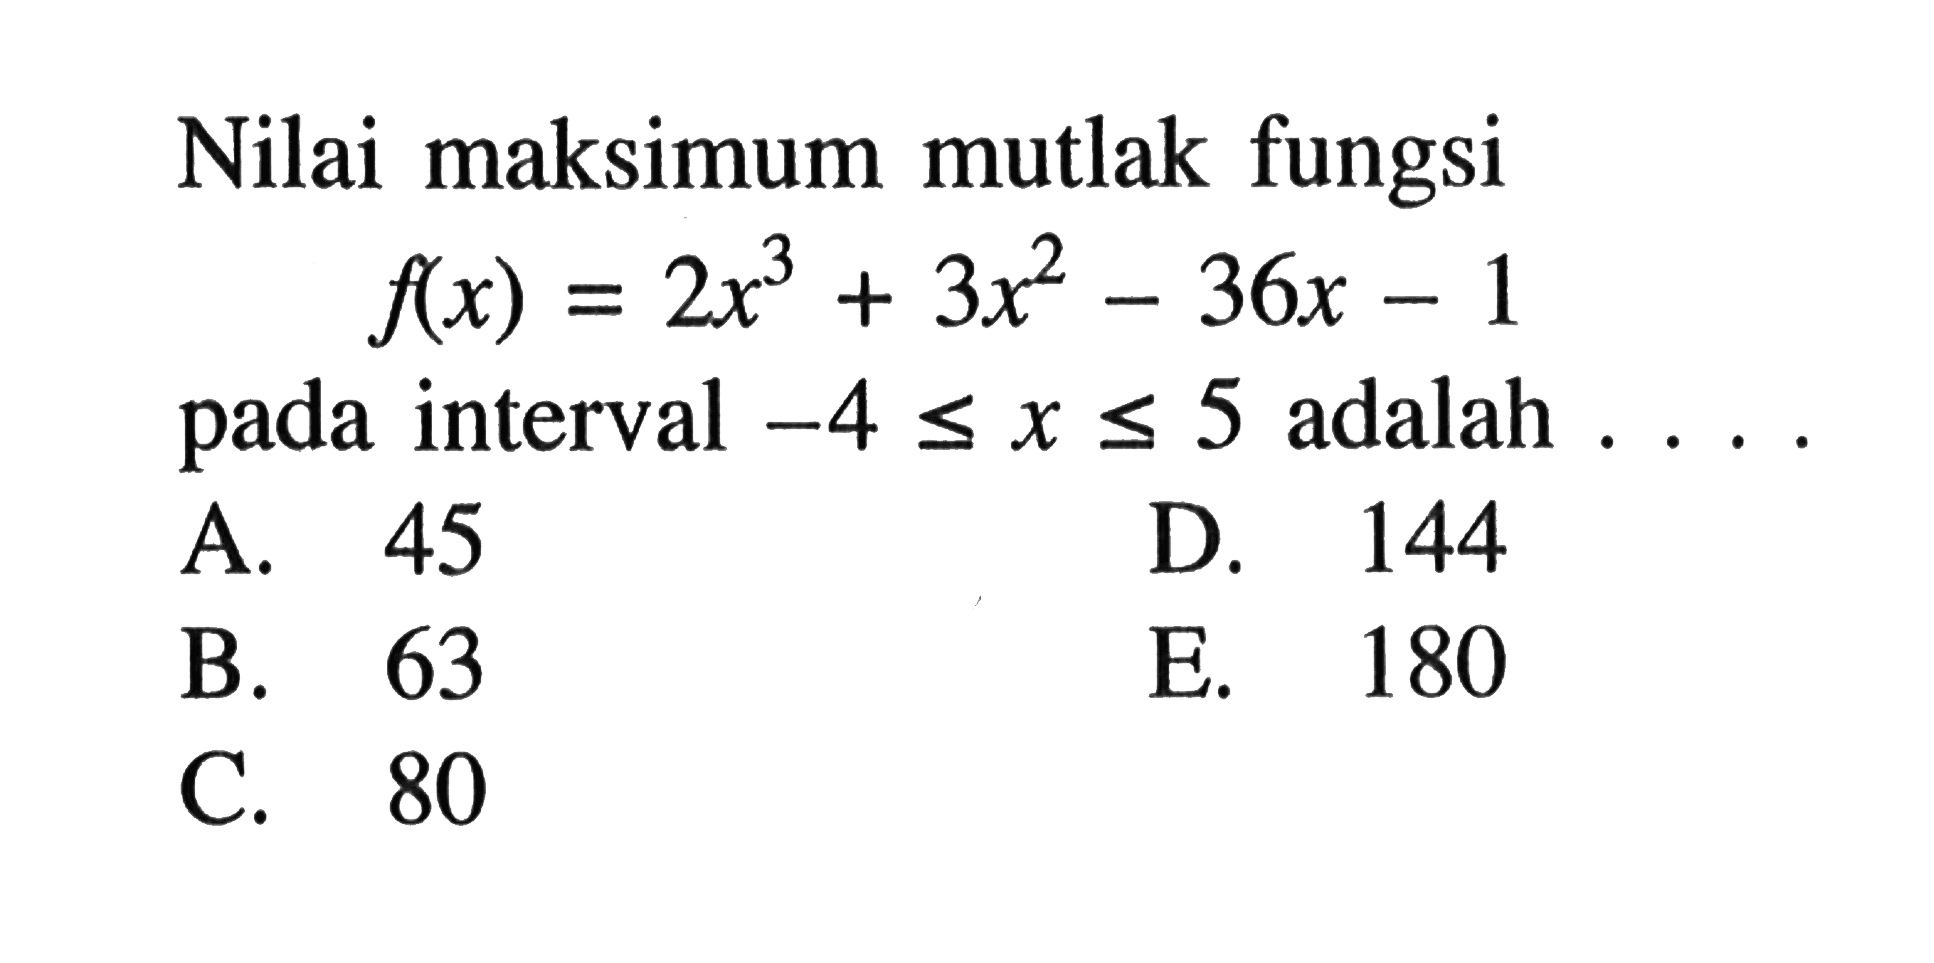 Nilai maksimum mutlak fungsif(x)=2x^3+3x^2-36x-1pada interval -4<=x<=5 adalah....